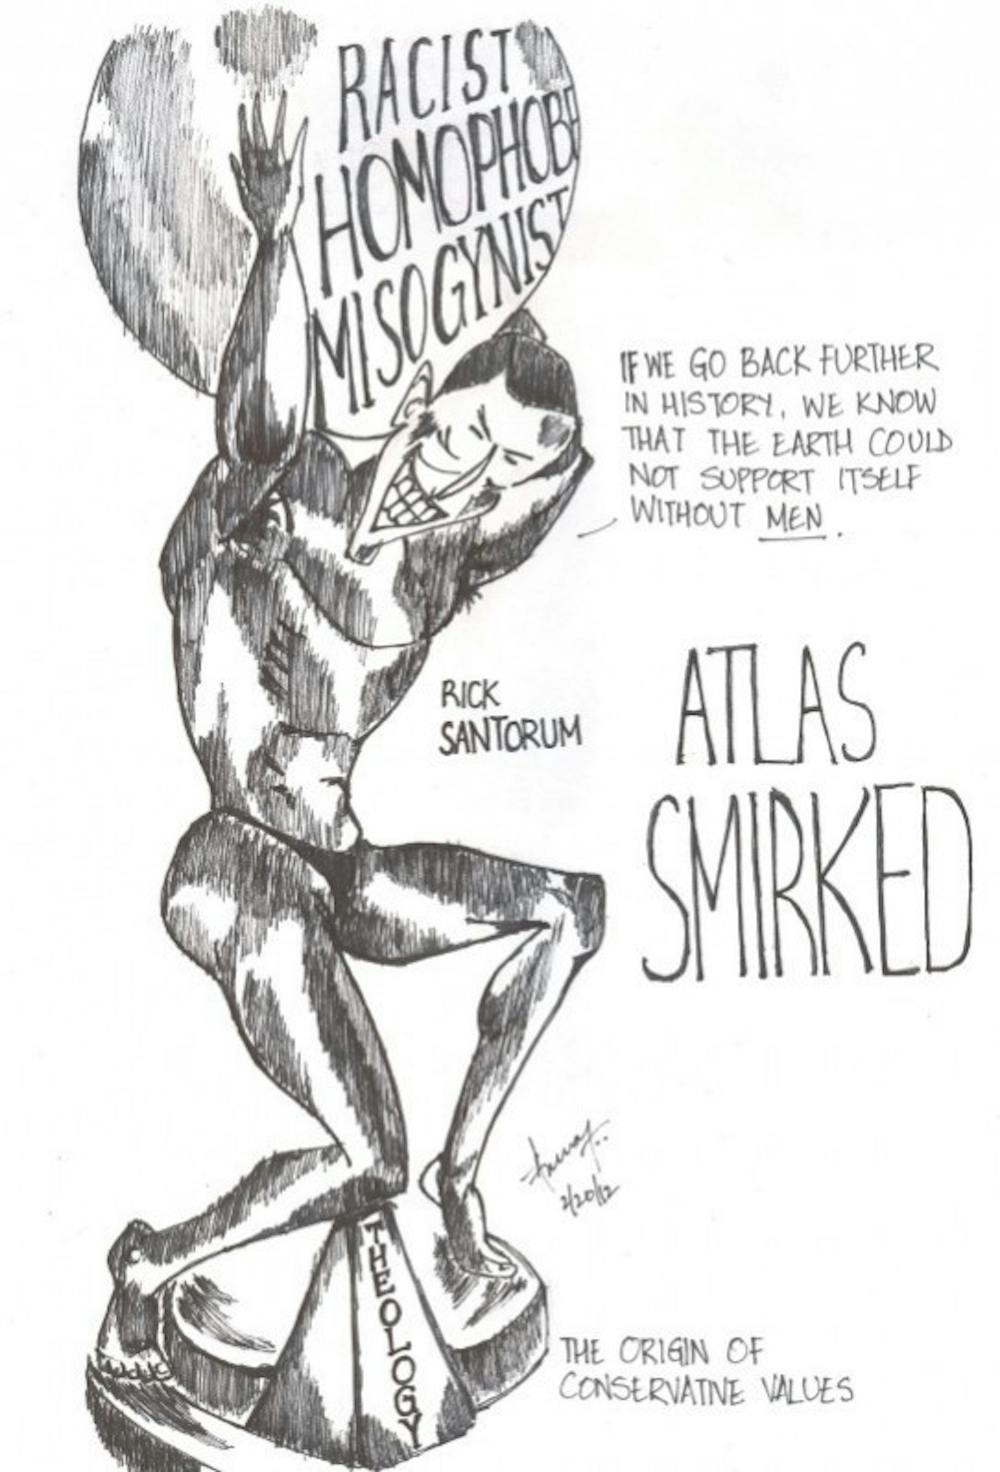 Atlas Smirked